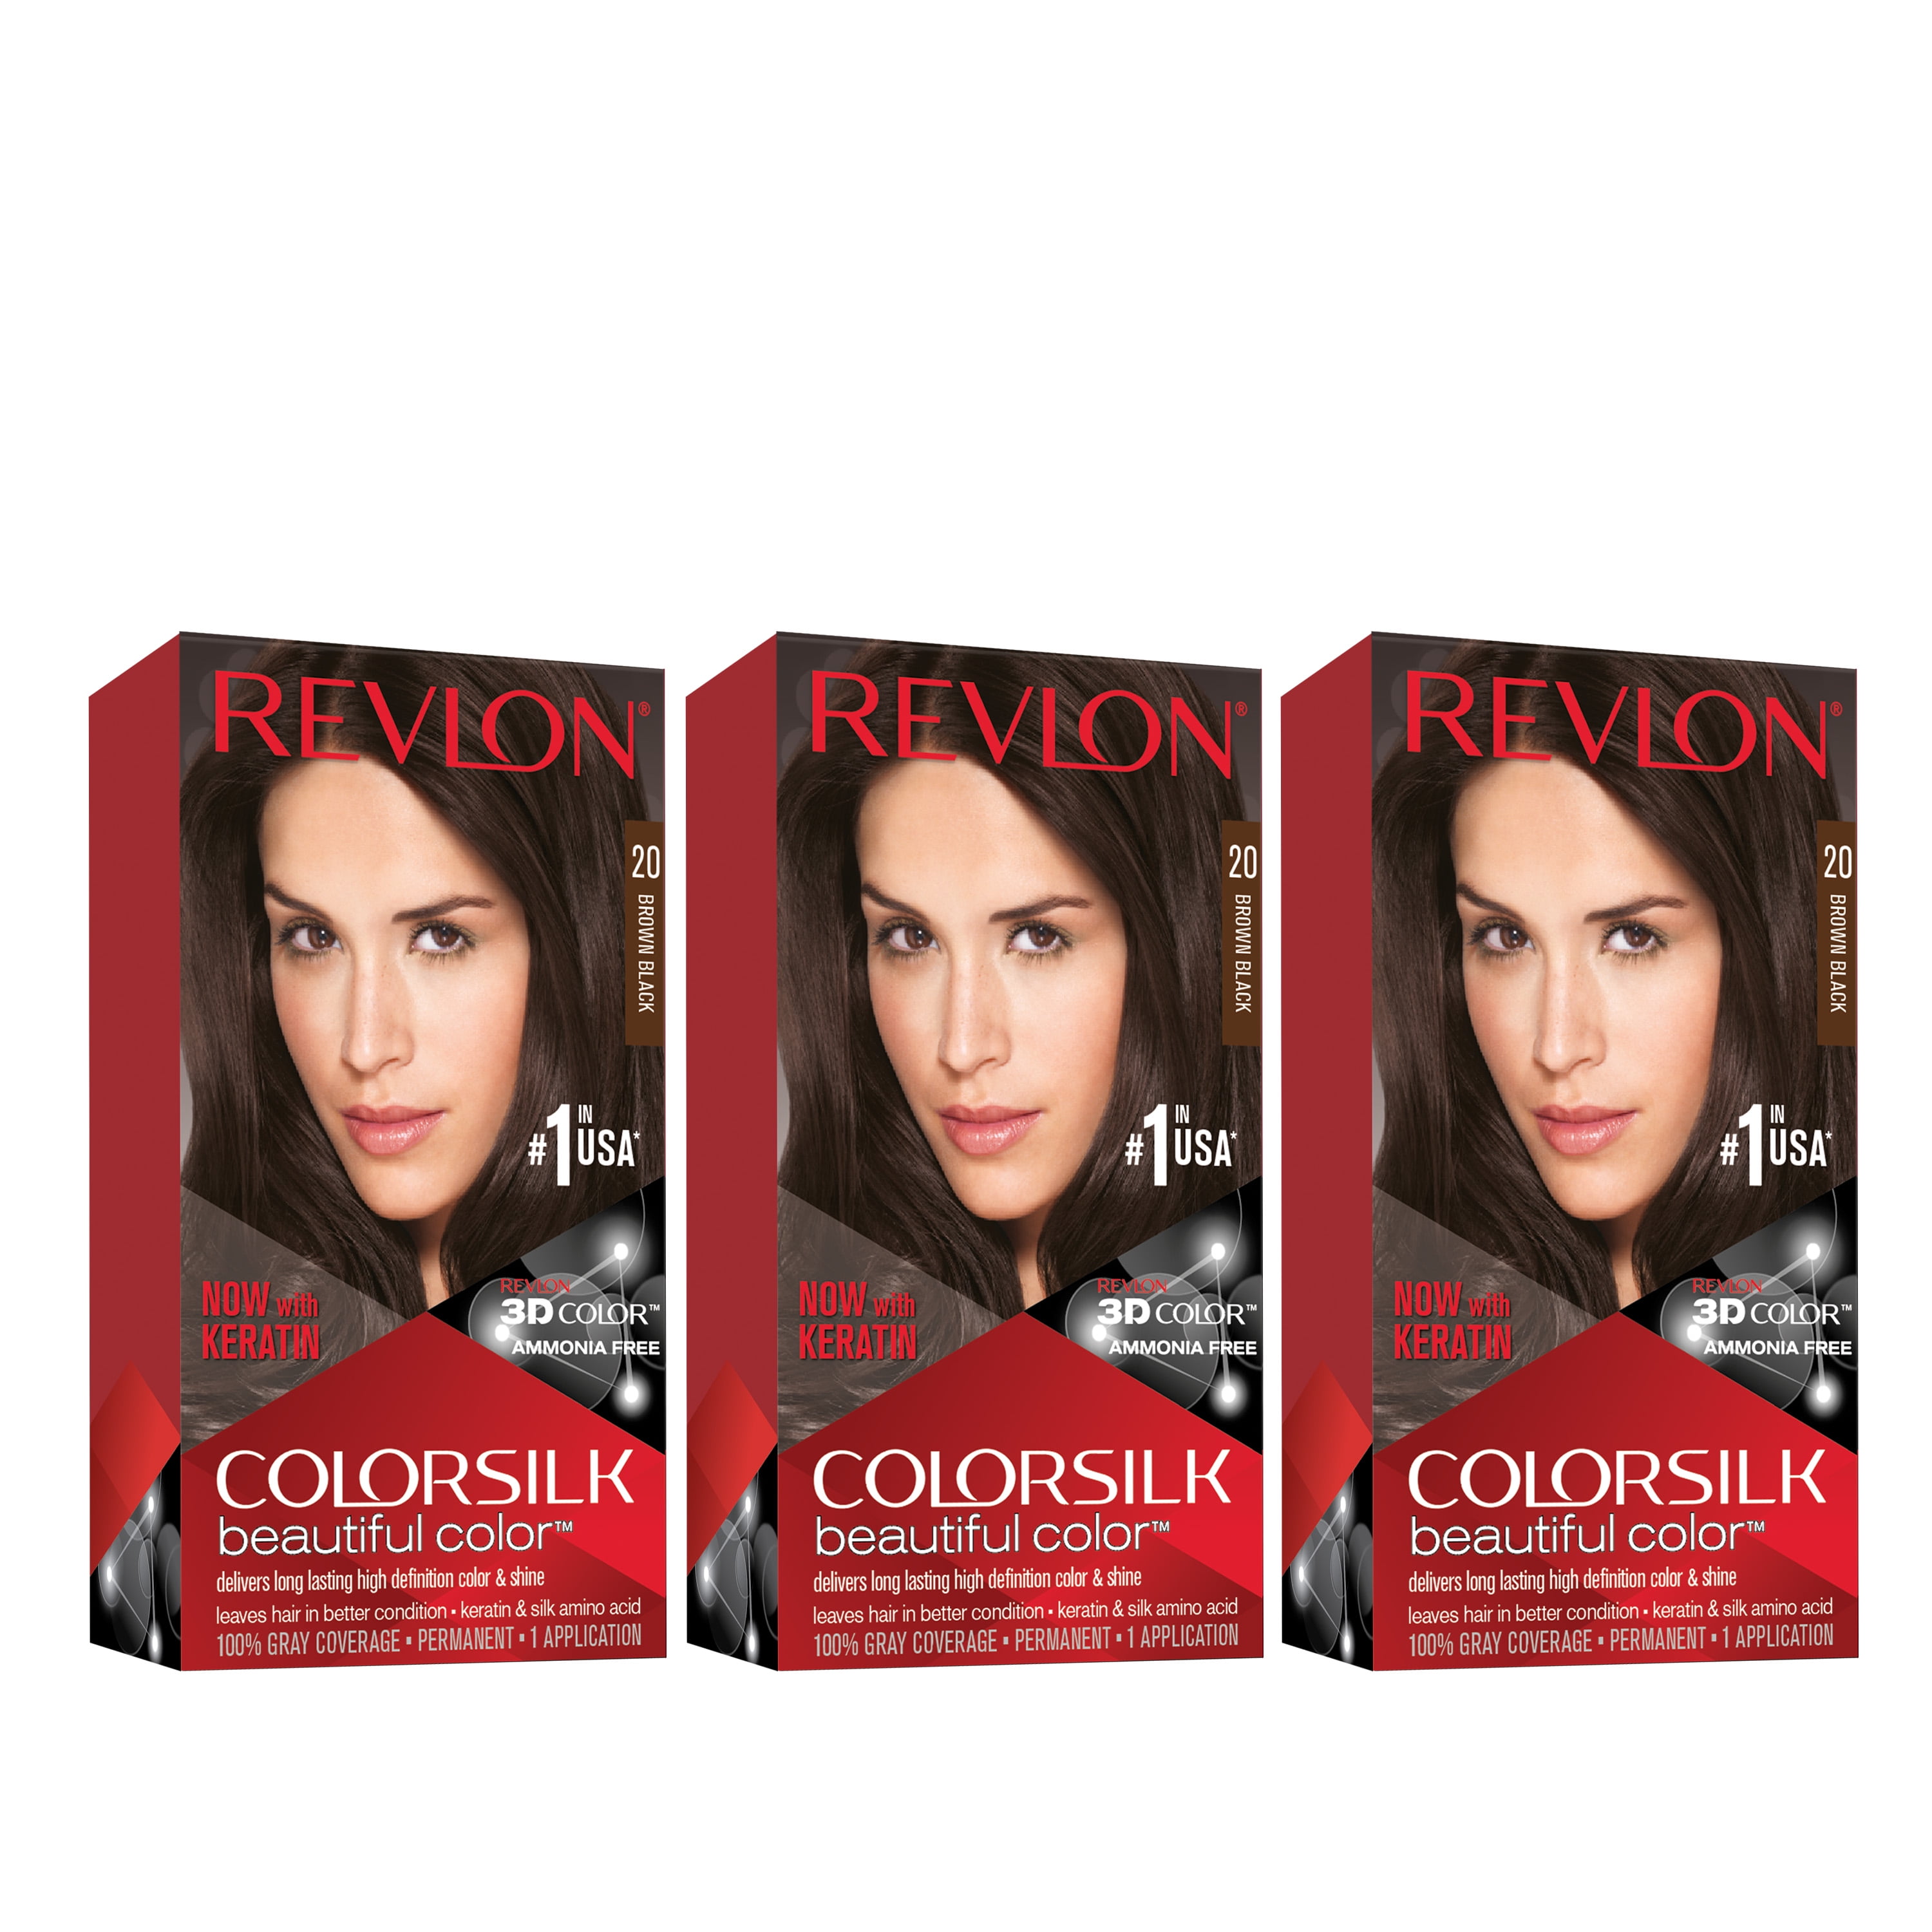 Revlon Colorsilk Beautiful Color Permanent Hair Dye, Dark Brown, At-Home  Full Coverage Application Kit, 40 Medium Ash Brown, 3 Pack 